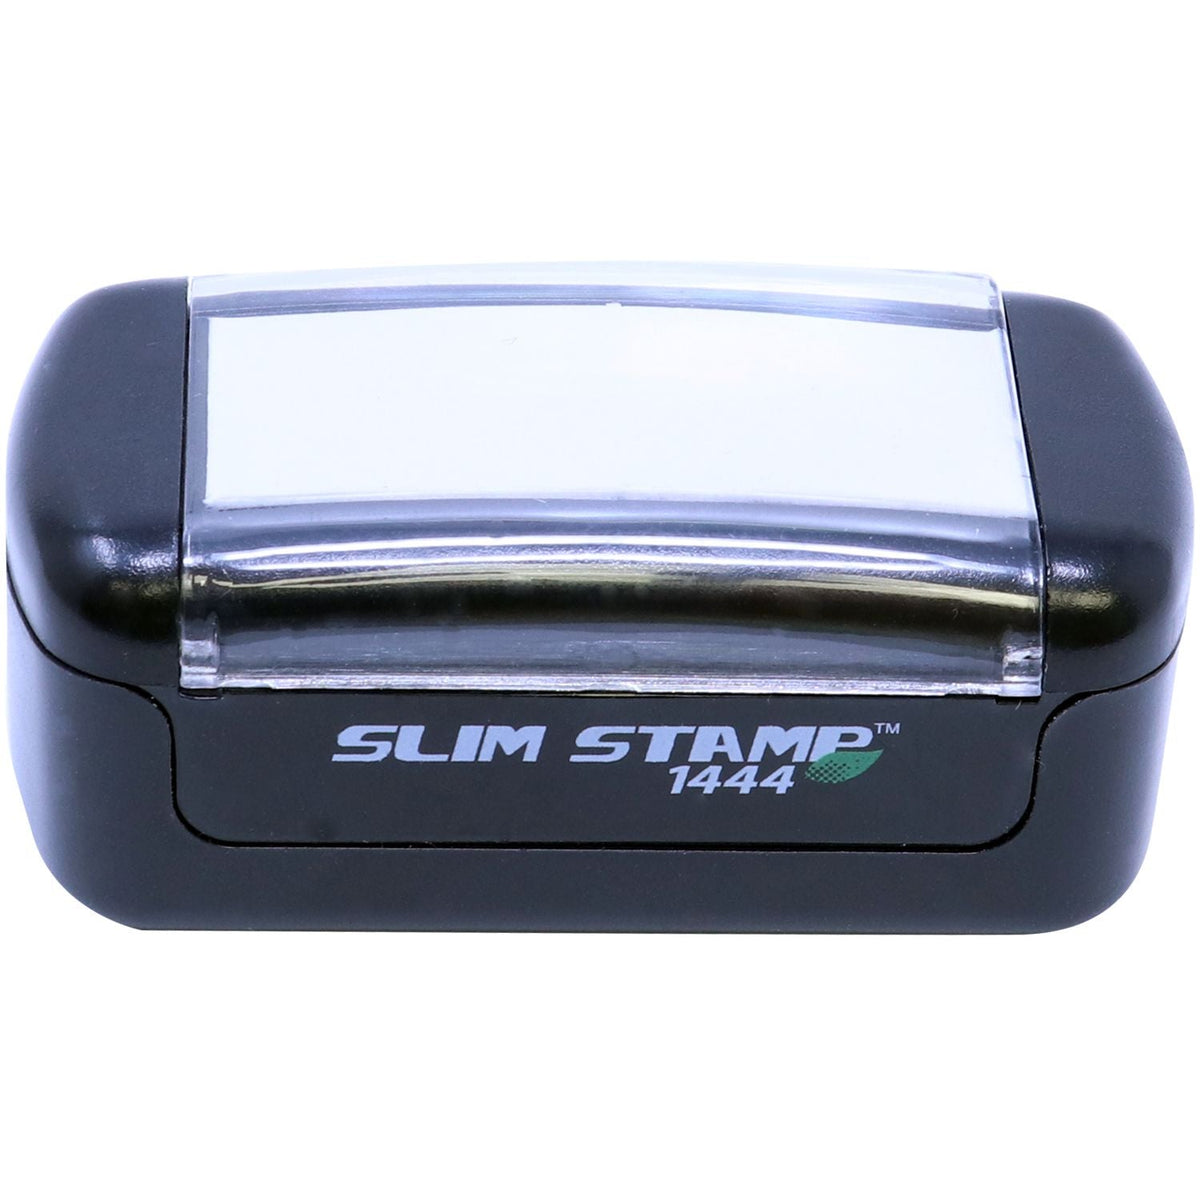 Slimstamp Custom Stamp 1444 Top Front